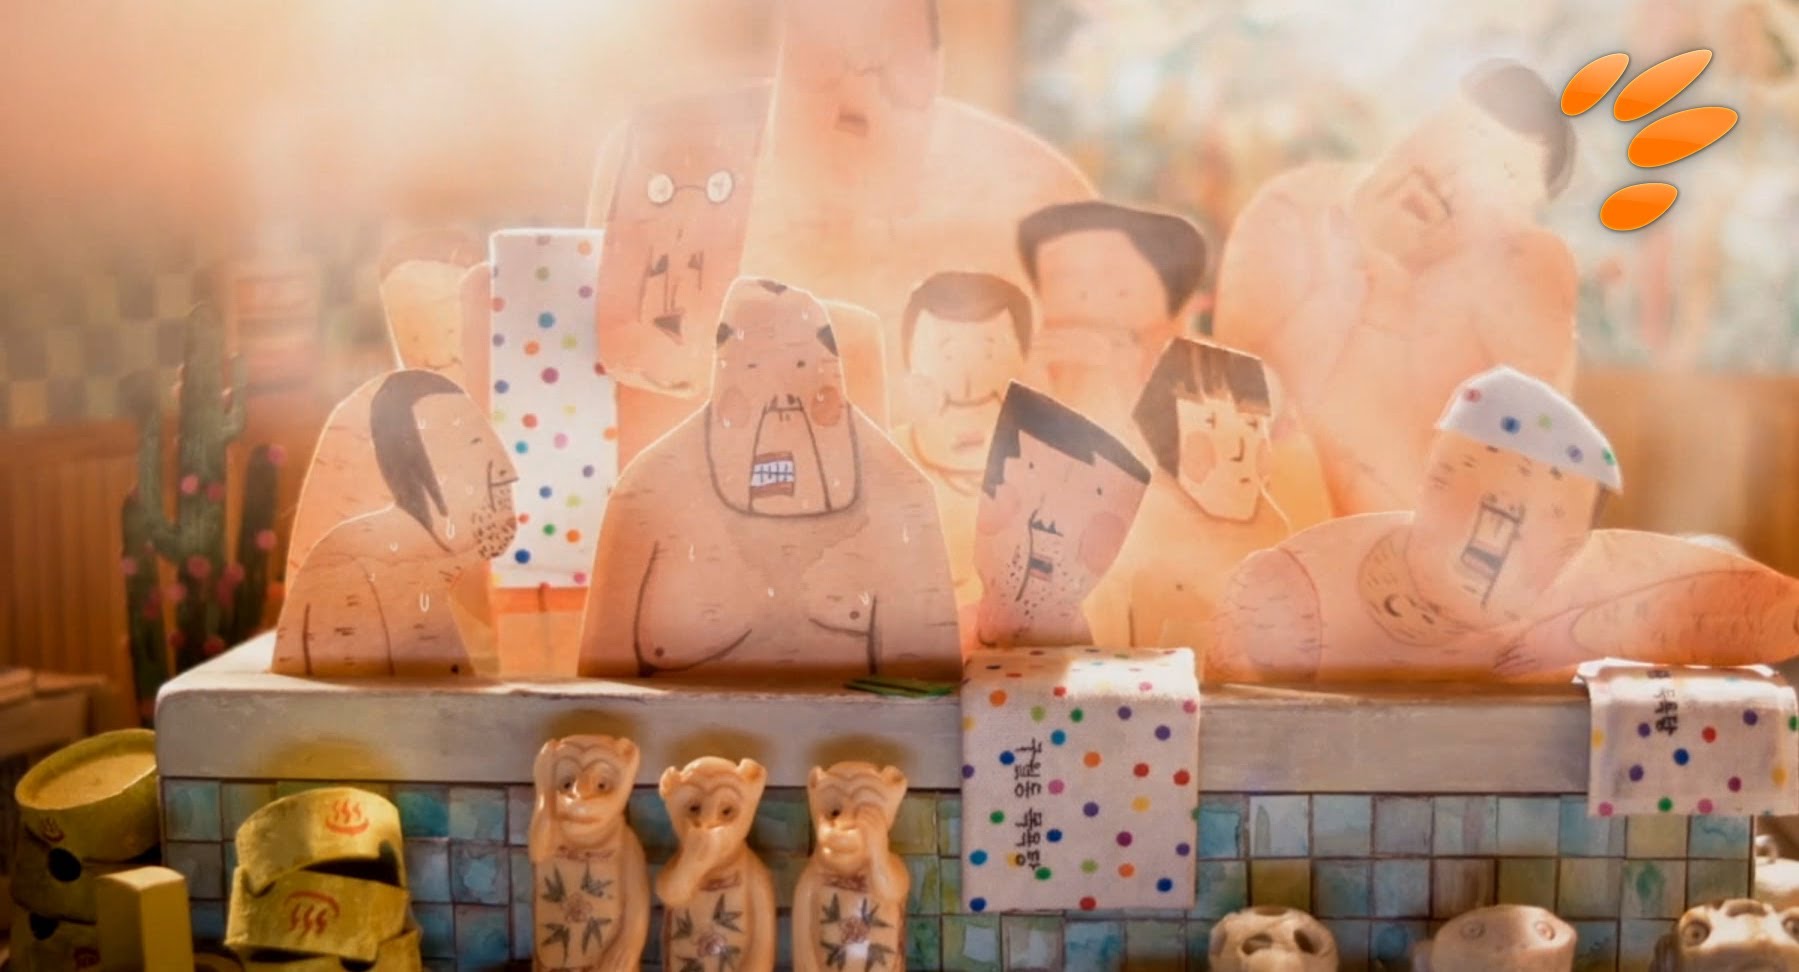 Animation at Sundance: 38-39º by Kangmin Kin